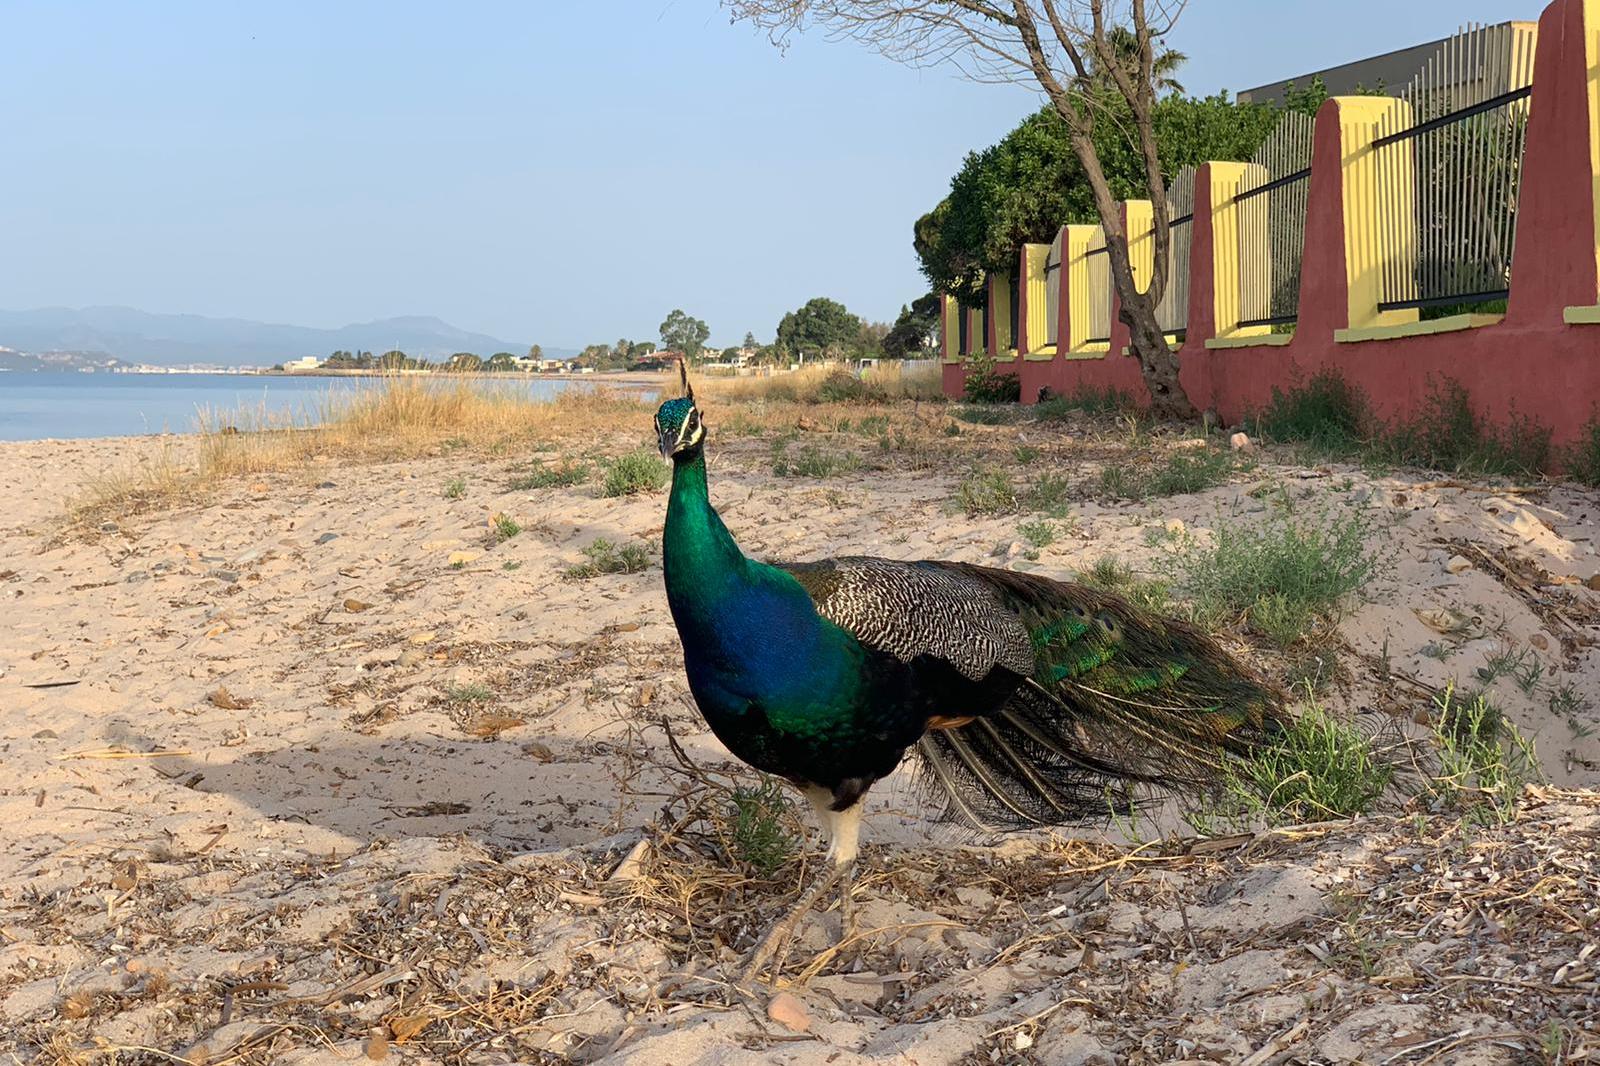 Il pavone in spiaggia (foto Daga)